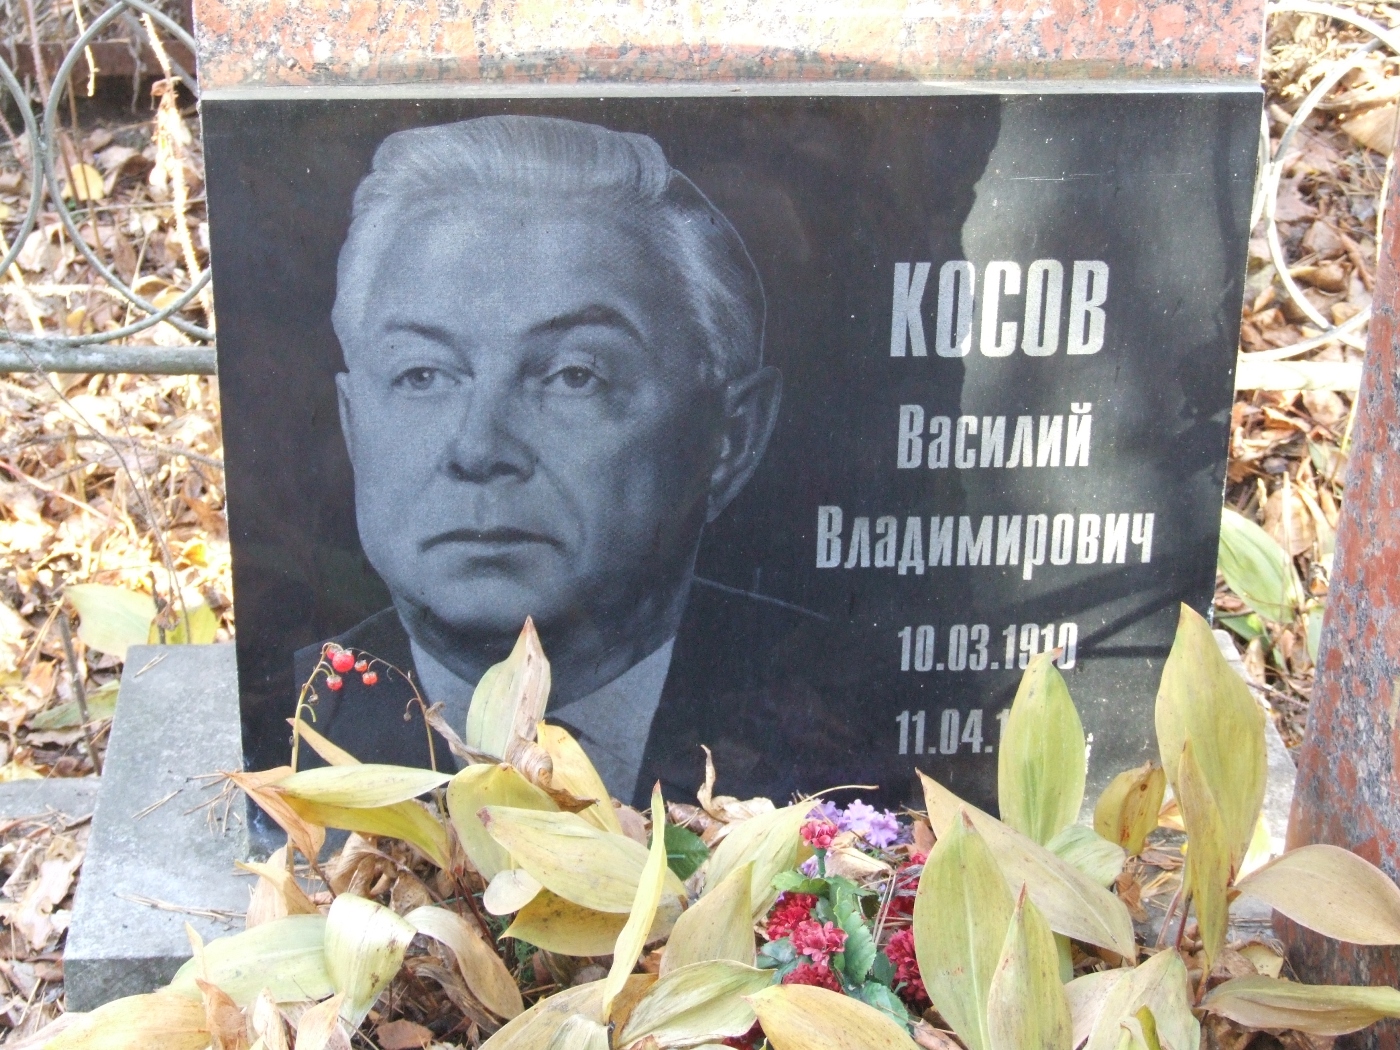 Надгробие на могиле Косова Василия Владимировича (1910-1996), Екатеринбург, Широкореченское кладбище, секция Почетных захоронений (старые большевики).